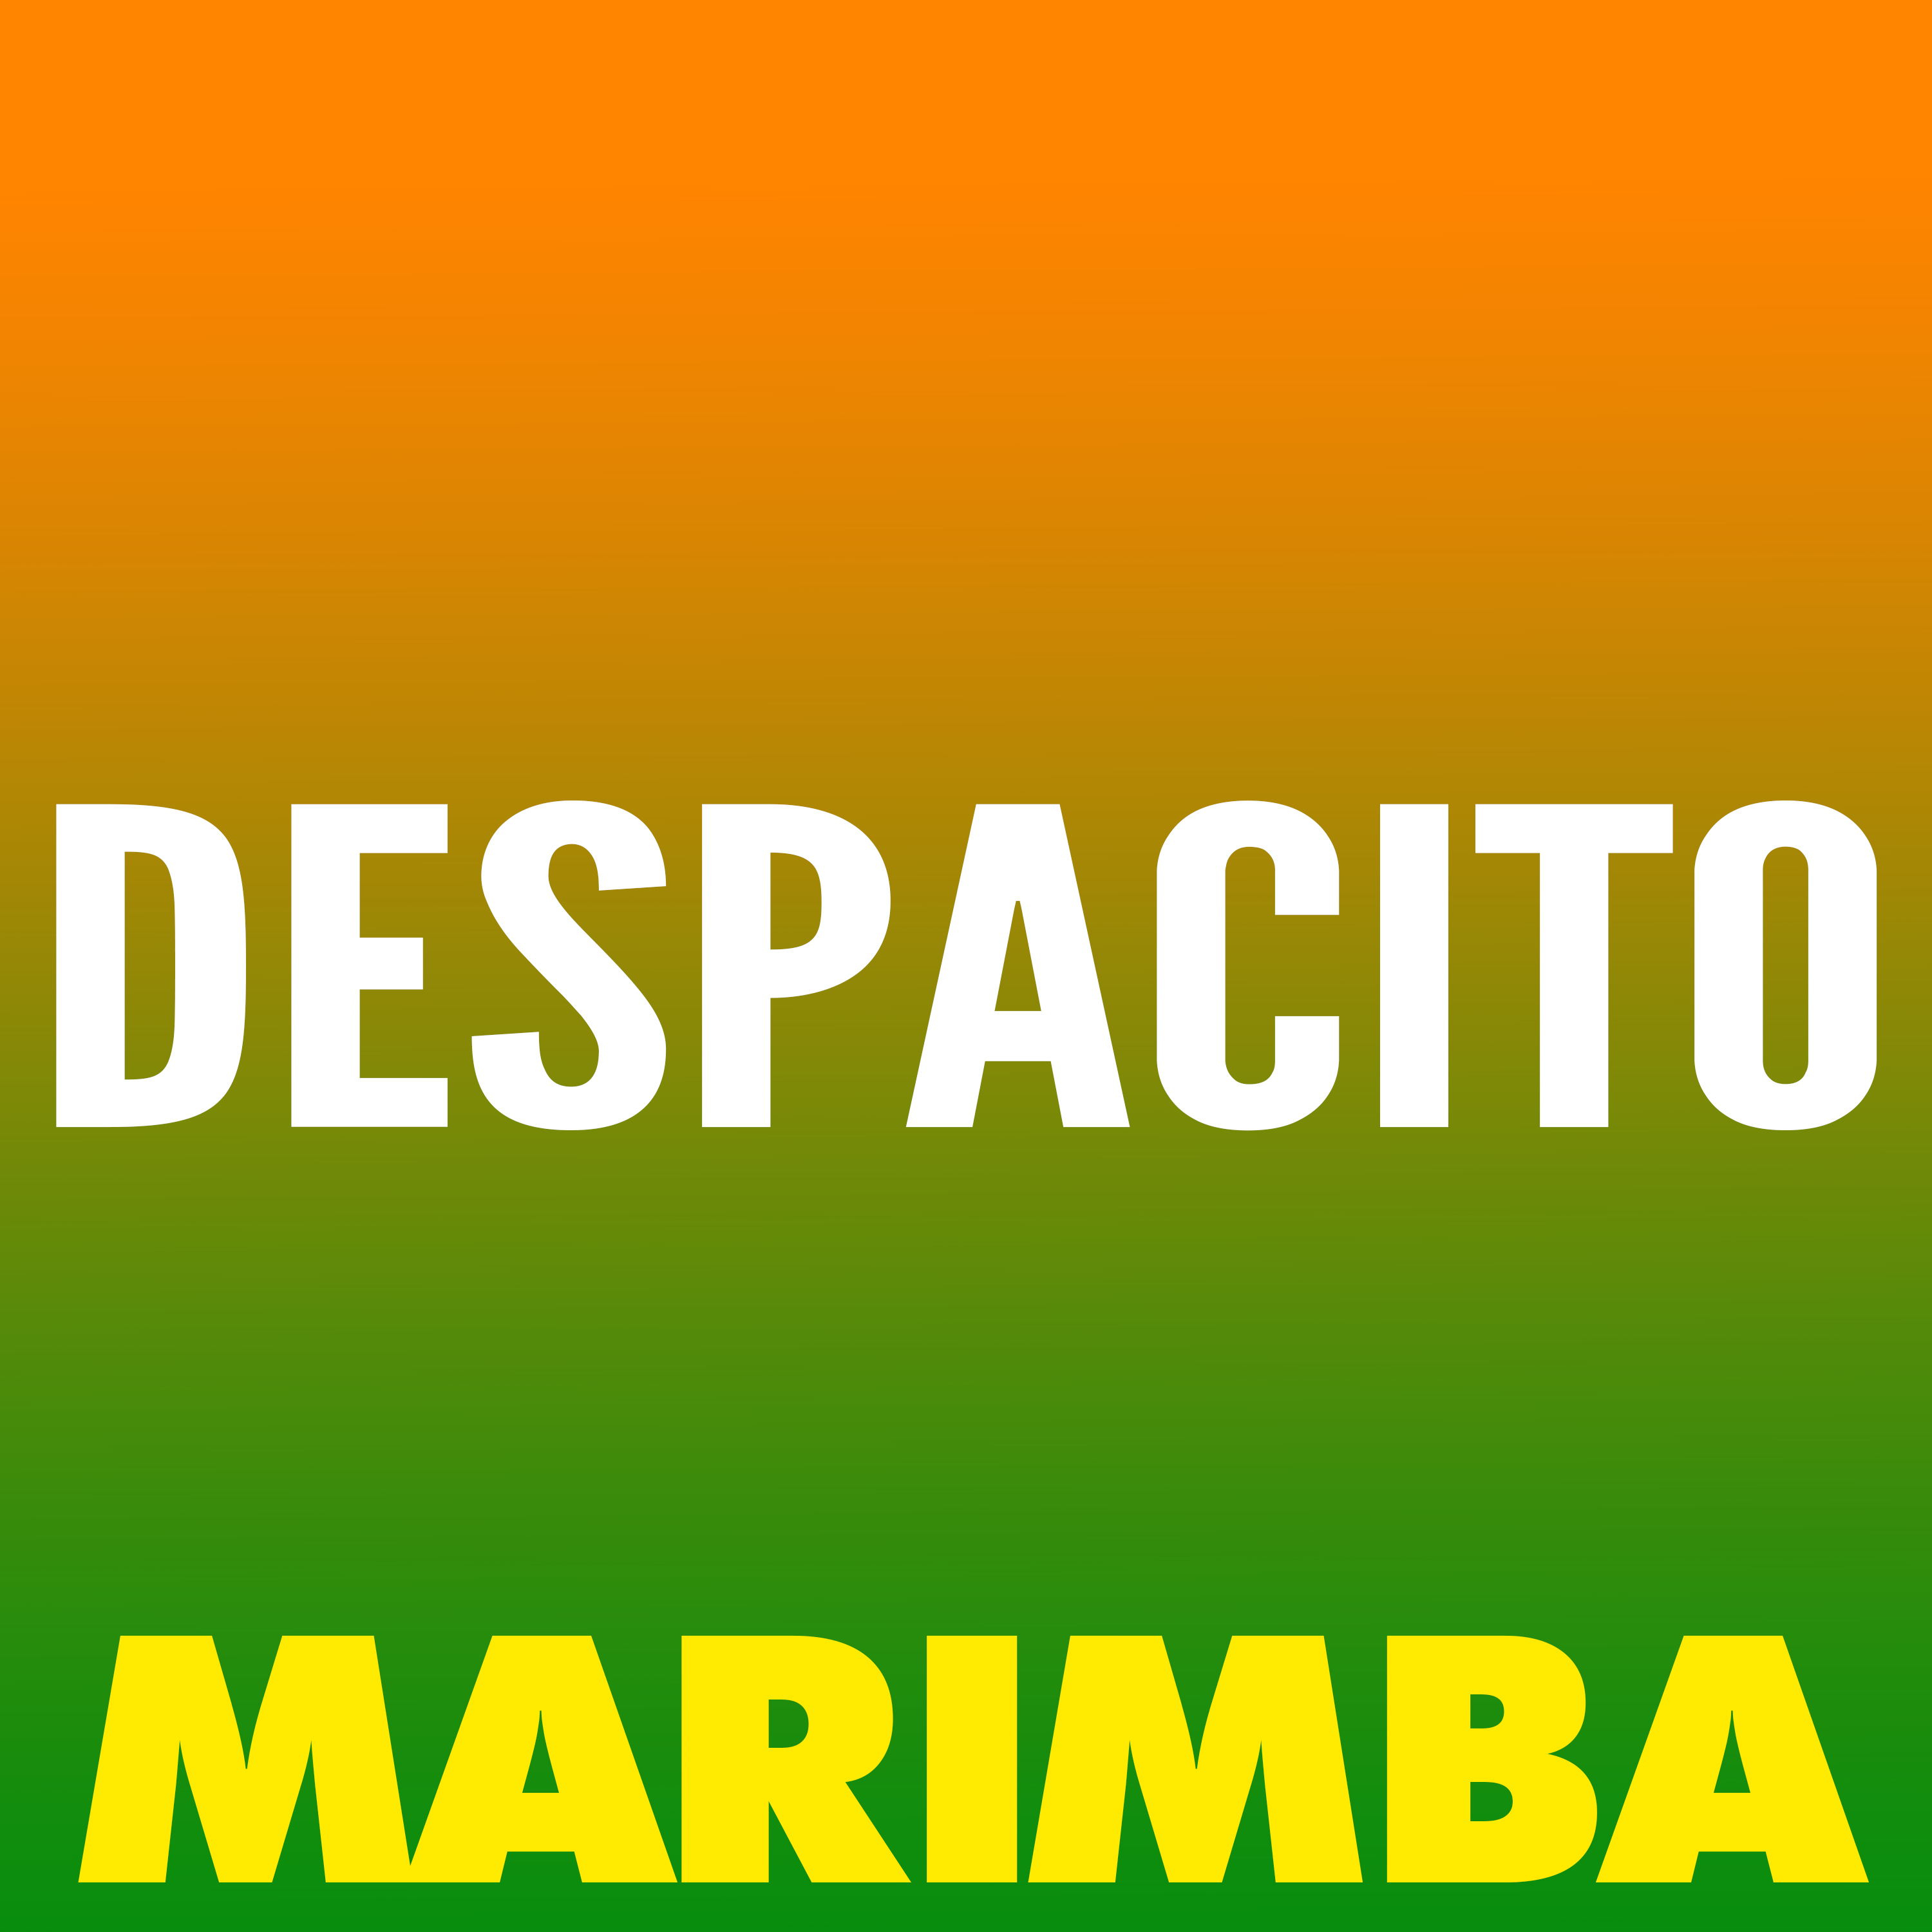 Despacito (Marimba Remix) Lyrics - Follow Lyrics.